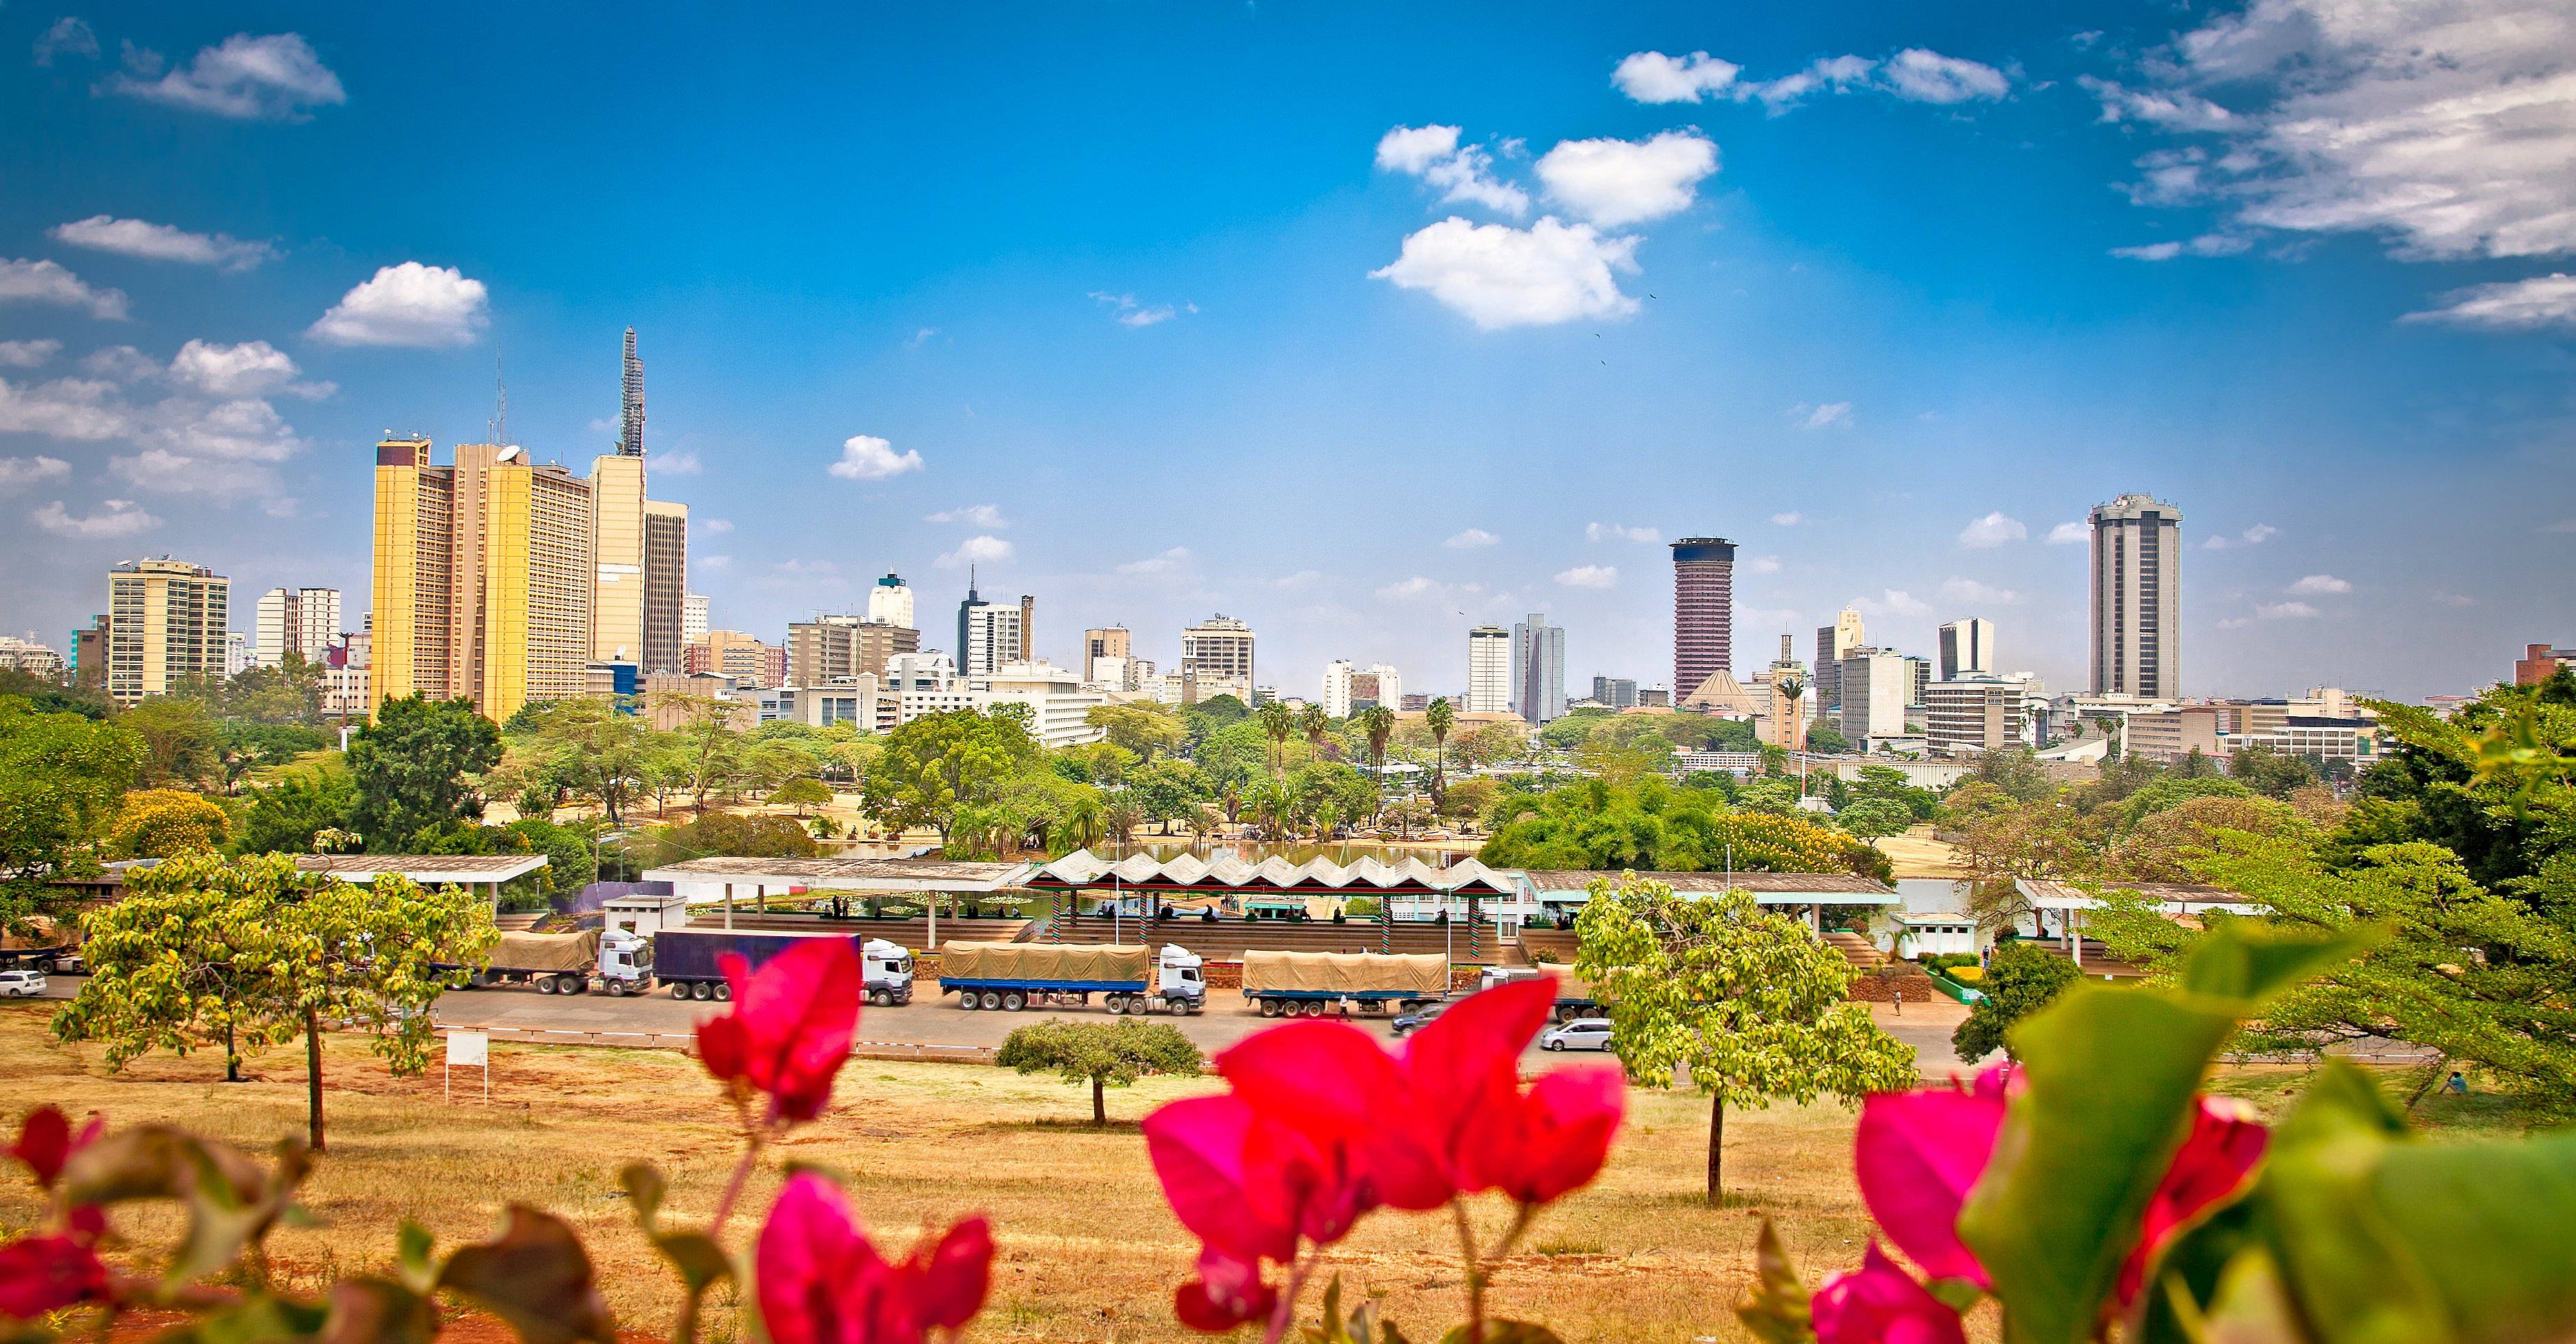 ¡Bienvenidos a Nairobi!